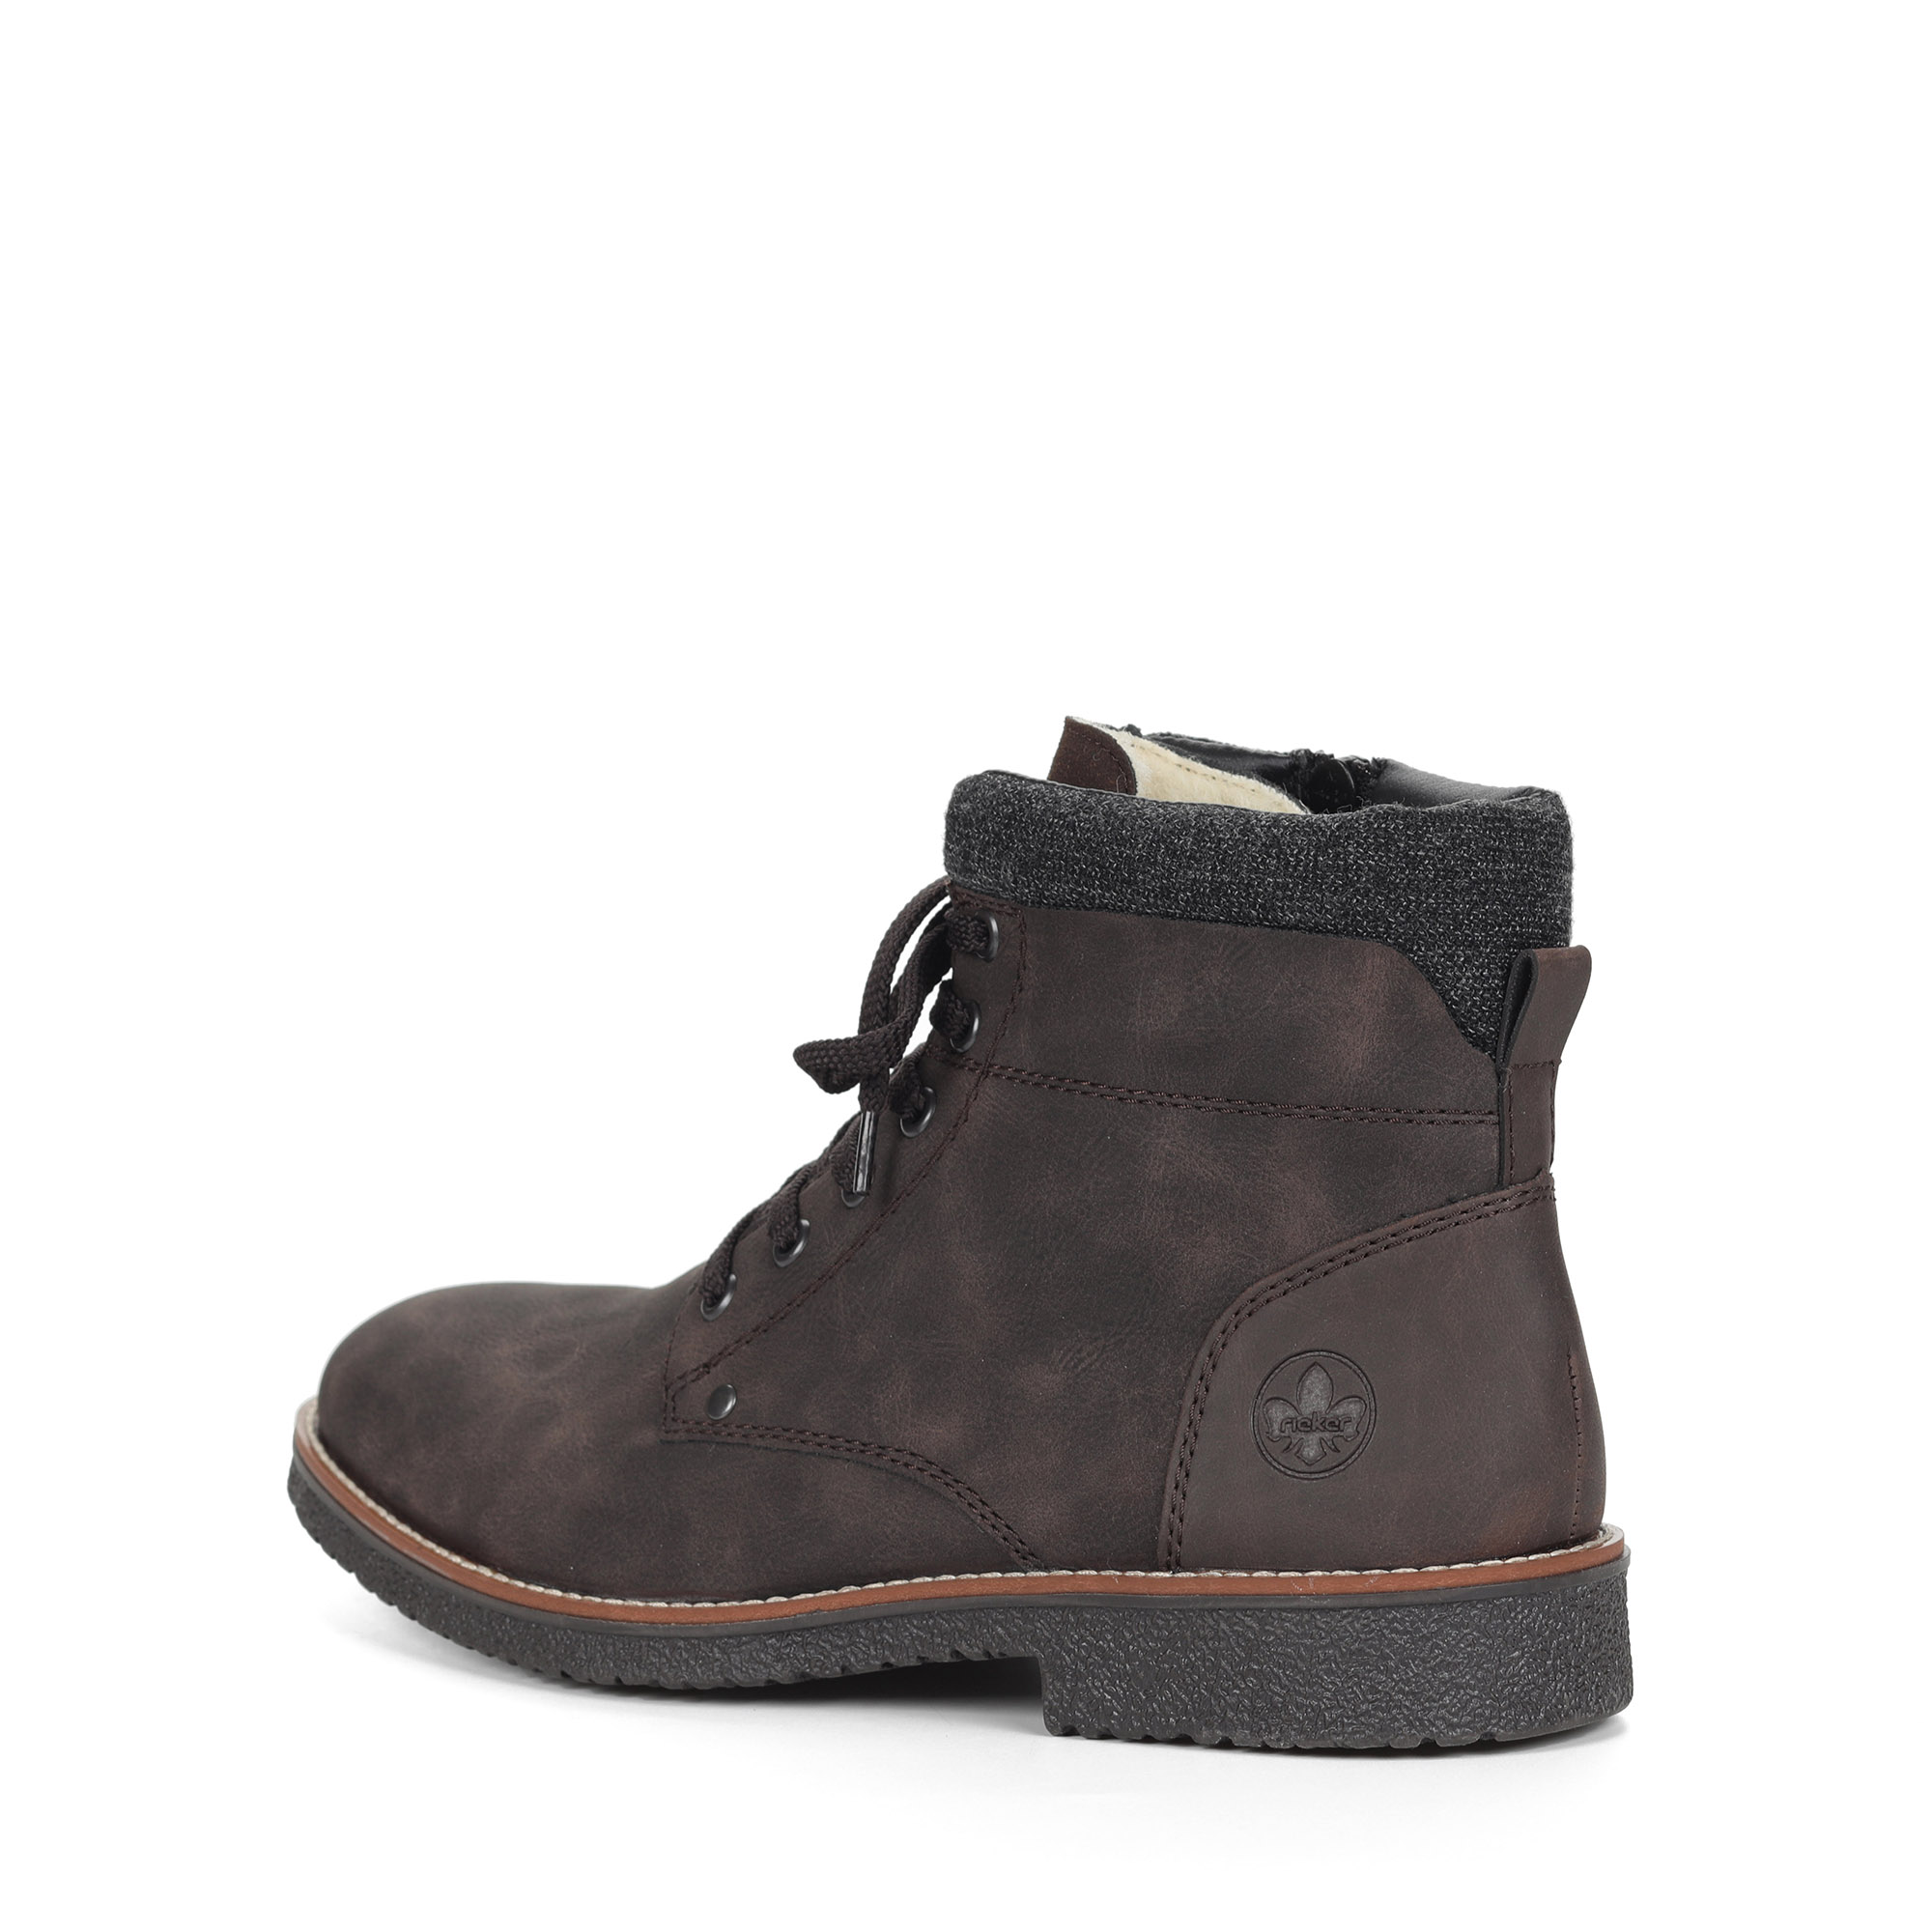 Коричневые ботинки из экокожи на подкладке из натуральной шерсти на шнурках Rieker, размер 45, цвет коричневый - фото 4